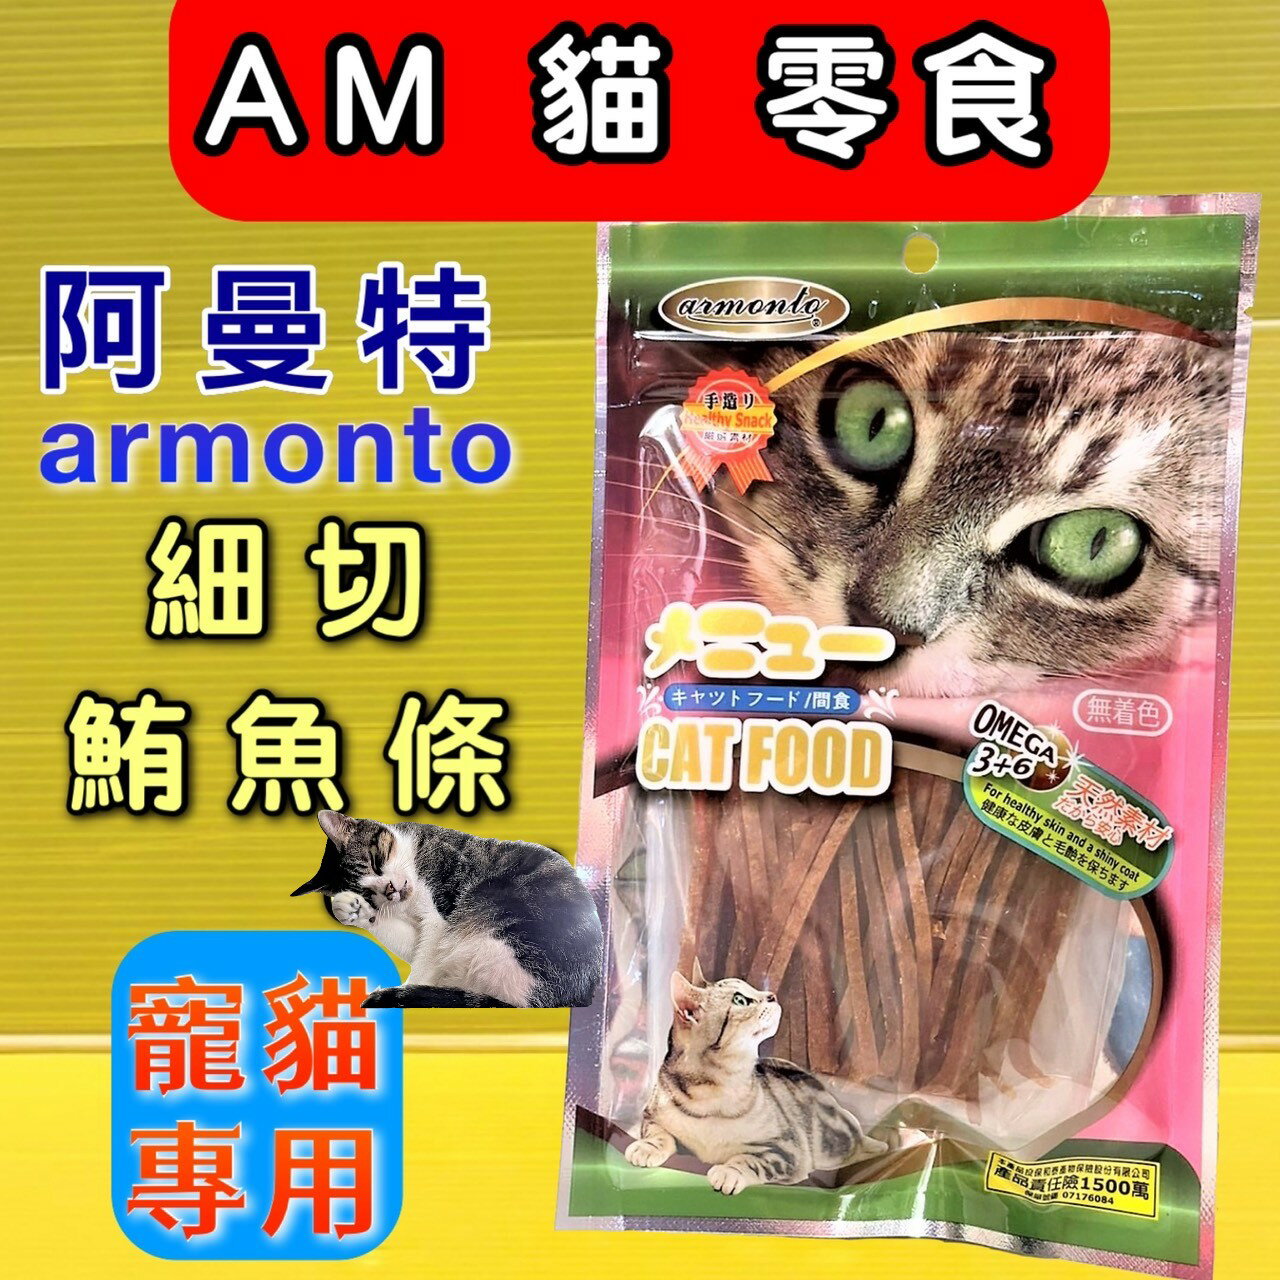 ✪四寶的店✪附發票~armonto 阿曼特 AM-貓專用細切鮪魚條 AM-326 貓零食/貓點心 獎勵好幫手60g/包 精製貓零食